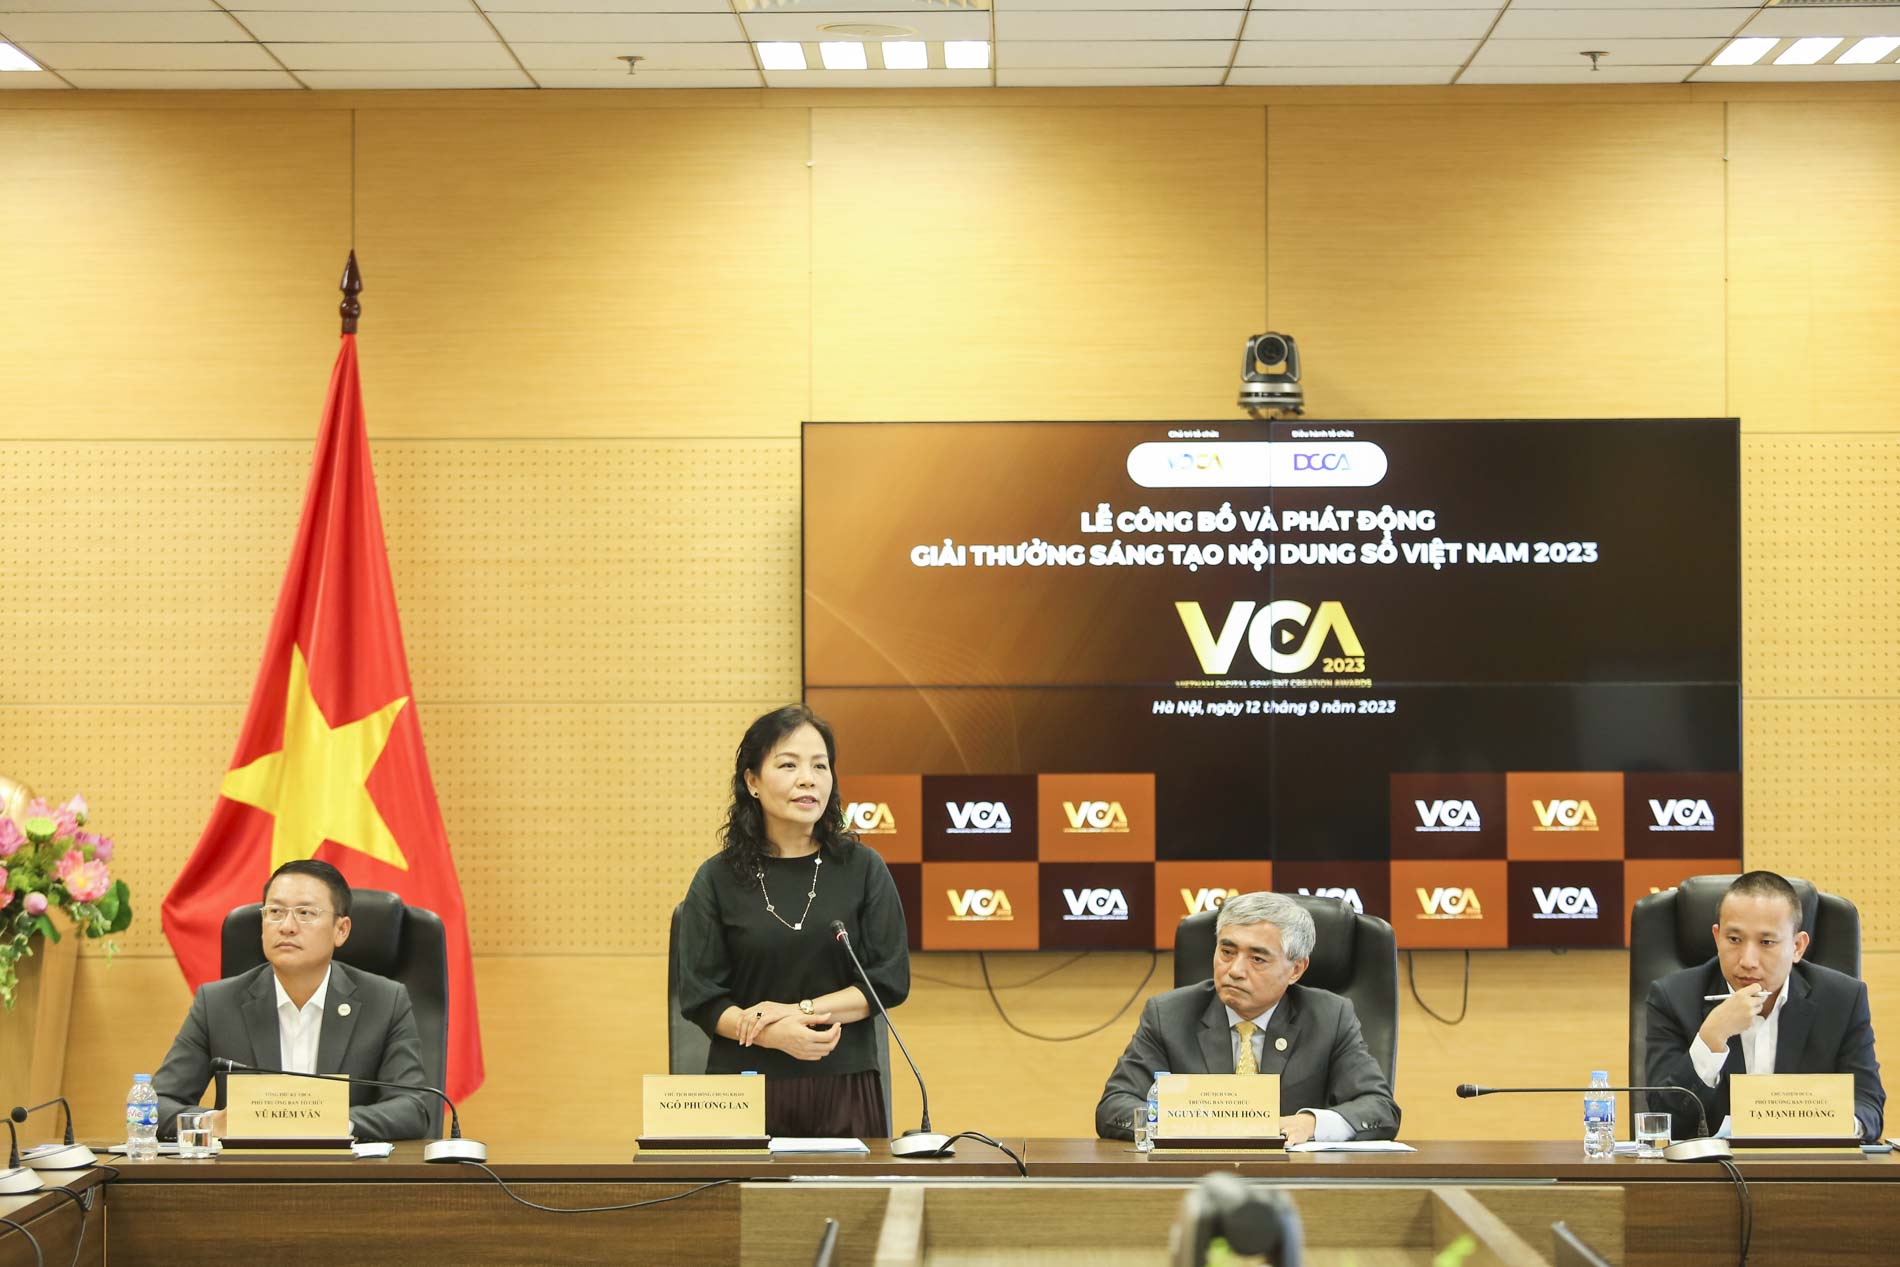 Hội Truyền thông số tổ chức giải thưởng sáng tạo nội dung số đầu tiên tại Việt Nam